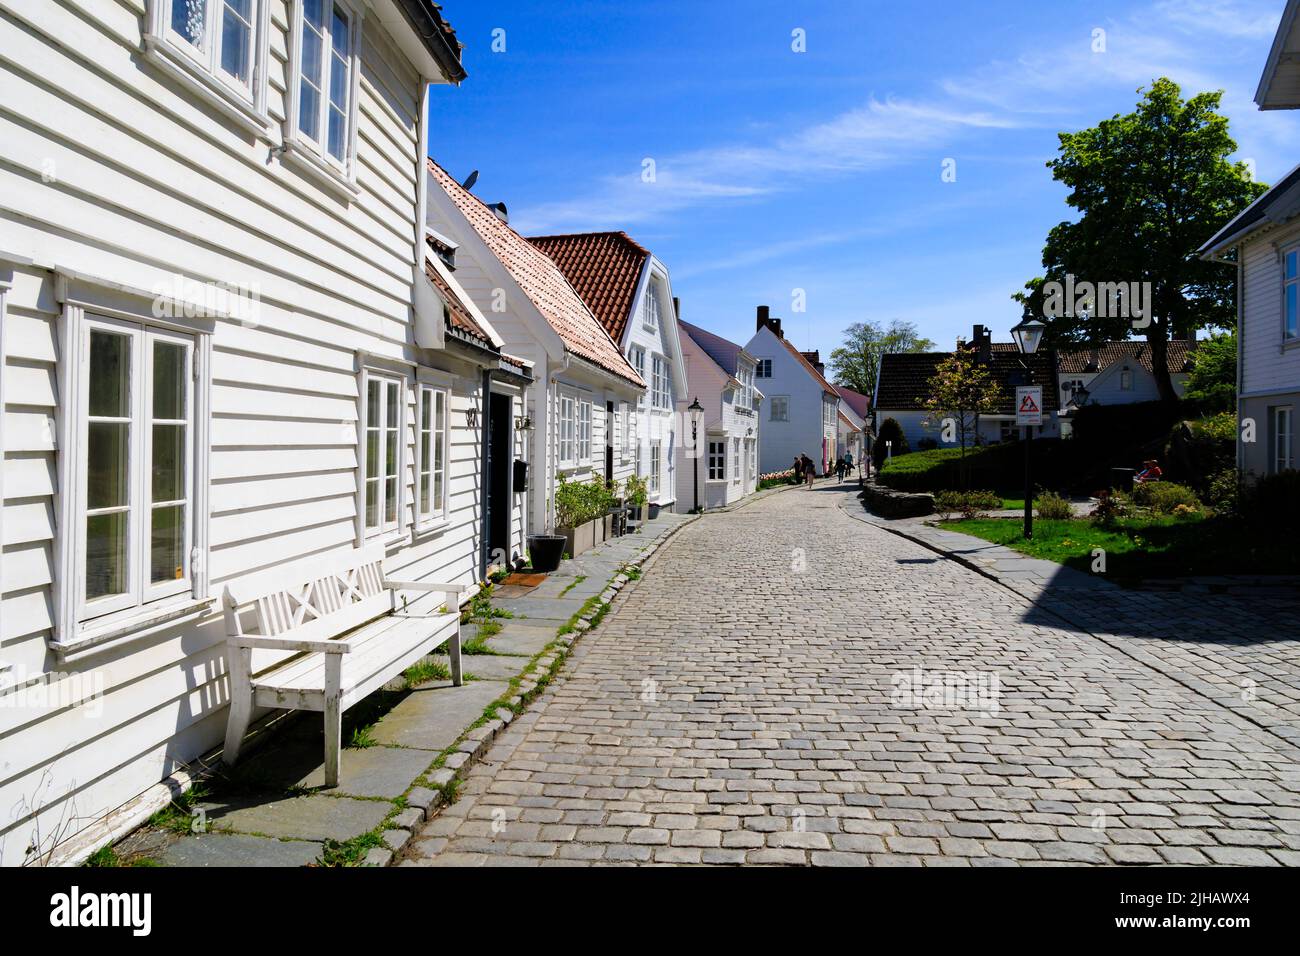 Maisons norvégiennes traditionnelles, blanches, peintes en bois sur Øvre Strandgate, Stavanger, Norvège. Banque D'Images